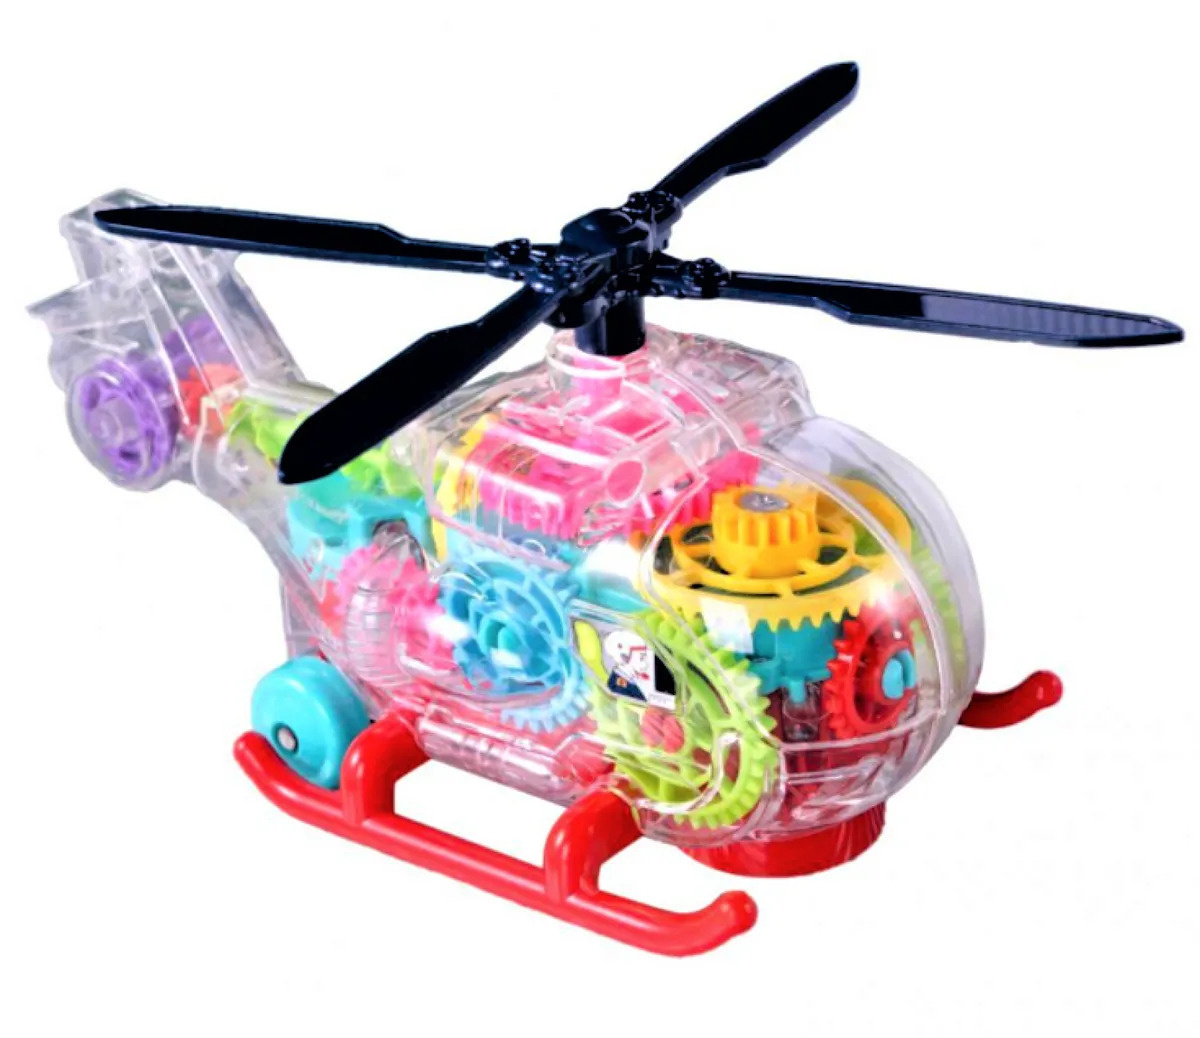 Вертолет GoodStore24 Шестерёнки, DD-VertSh вертолет ascelot 2 5 канальный с ду и функцией обхода препятствий bg